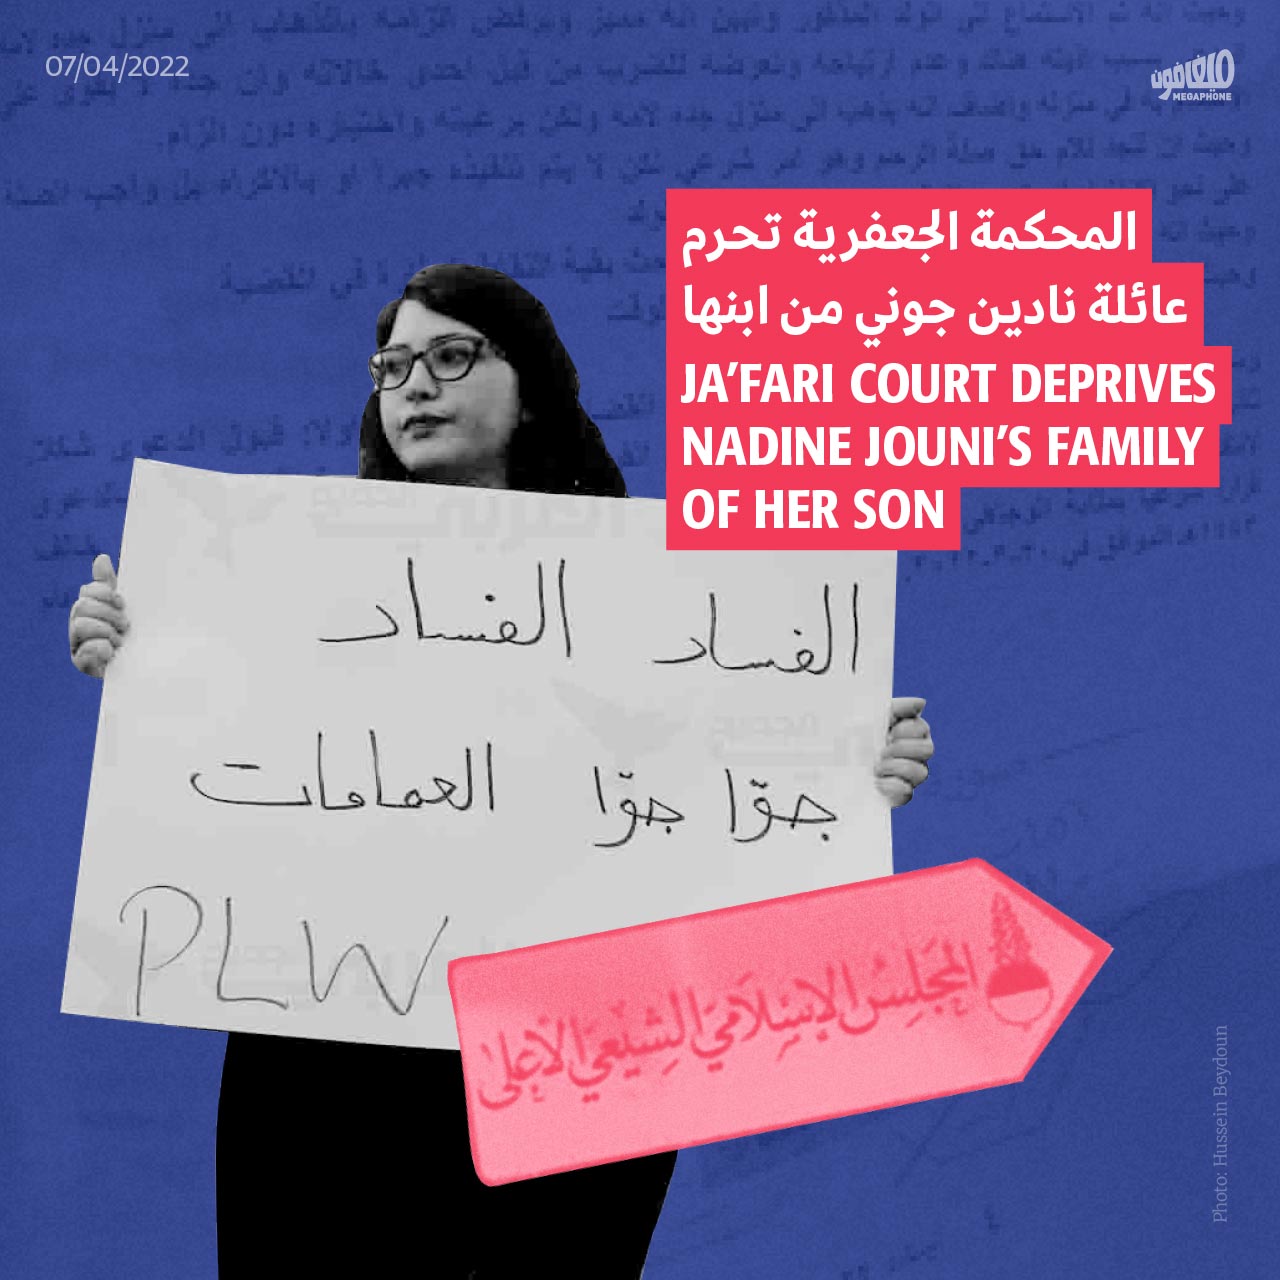 المحكمة الجعفرية تحرم عائلة نادين جوني من ابنها